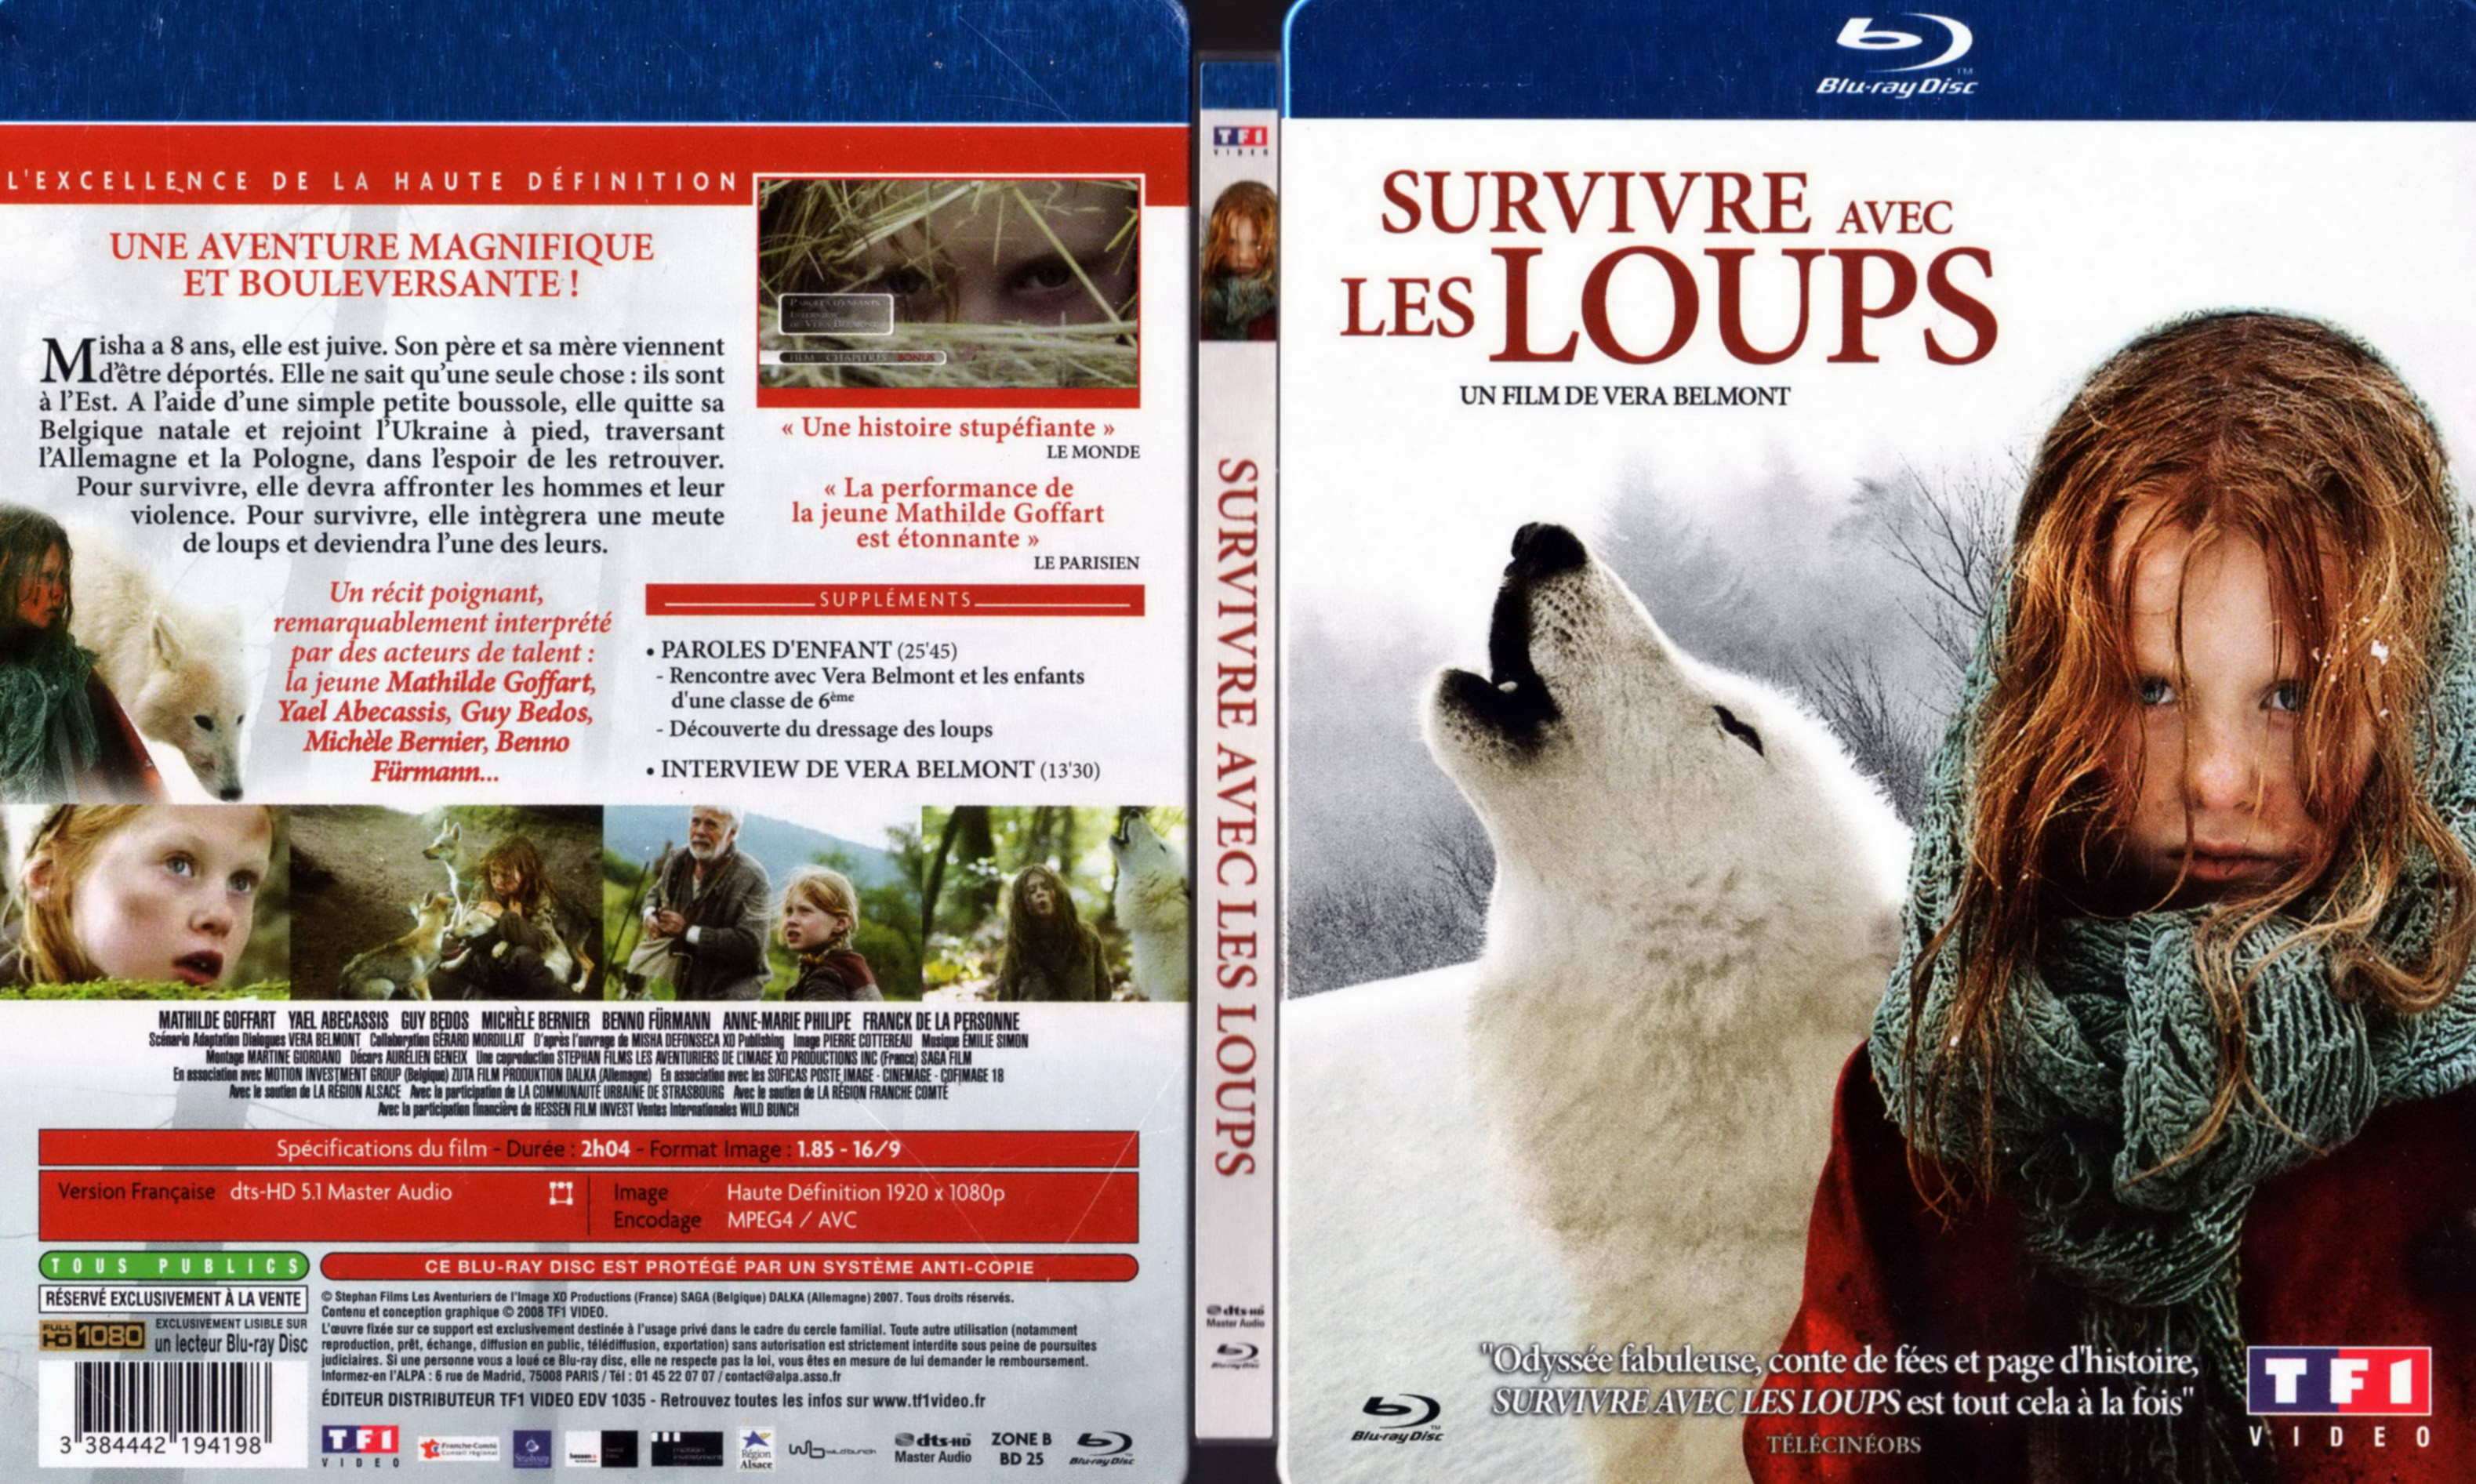 Jaquette DVD Survivre avec les loups (BLU-RAY) v2